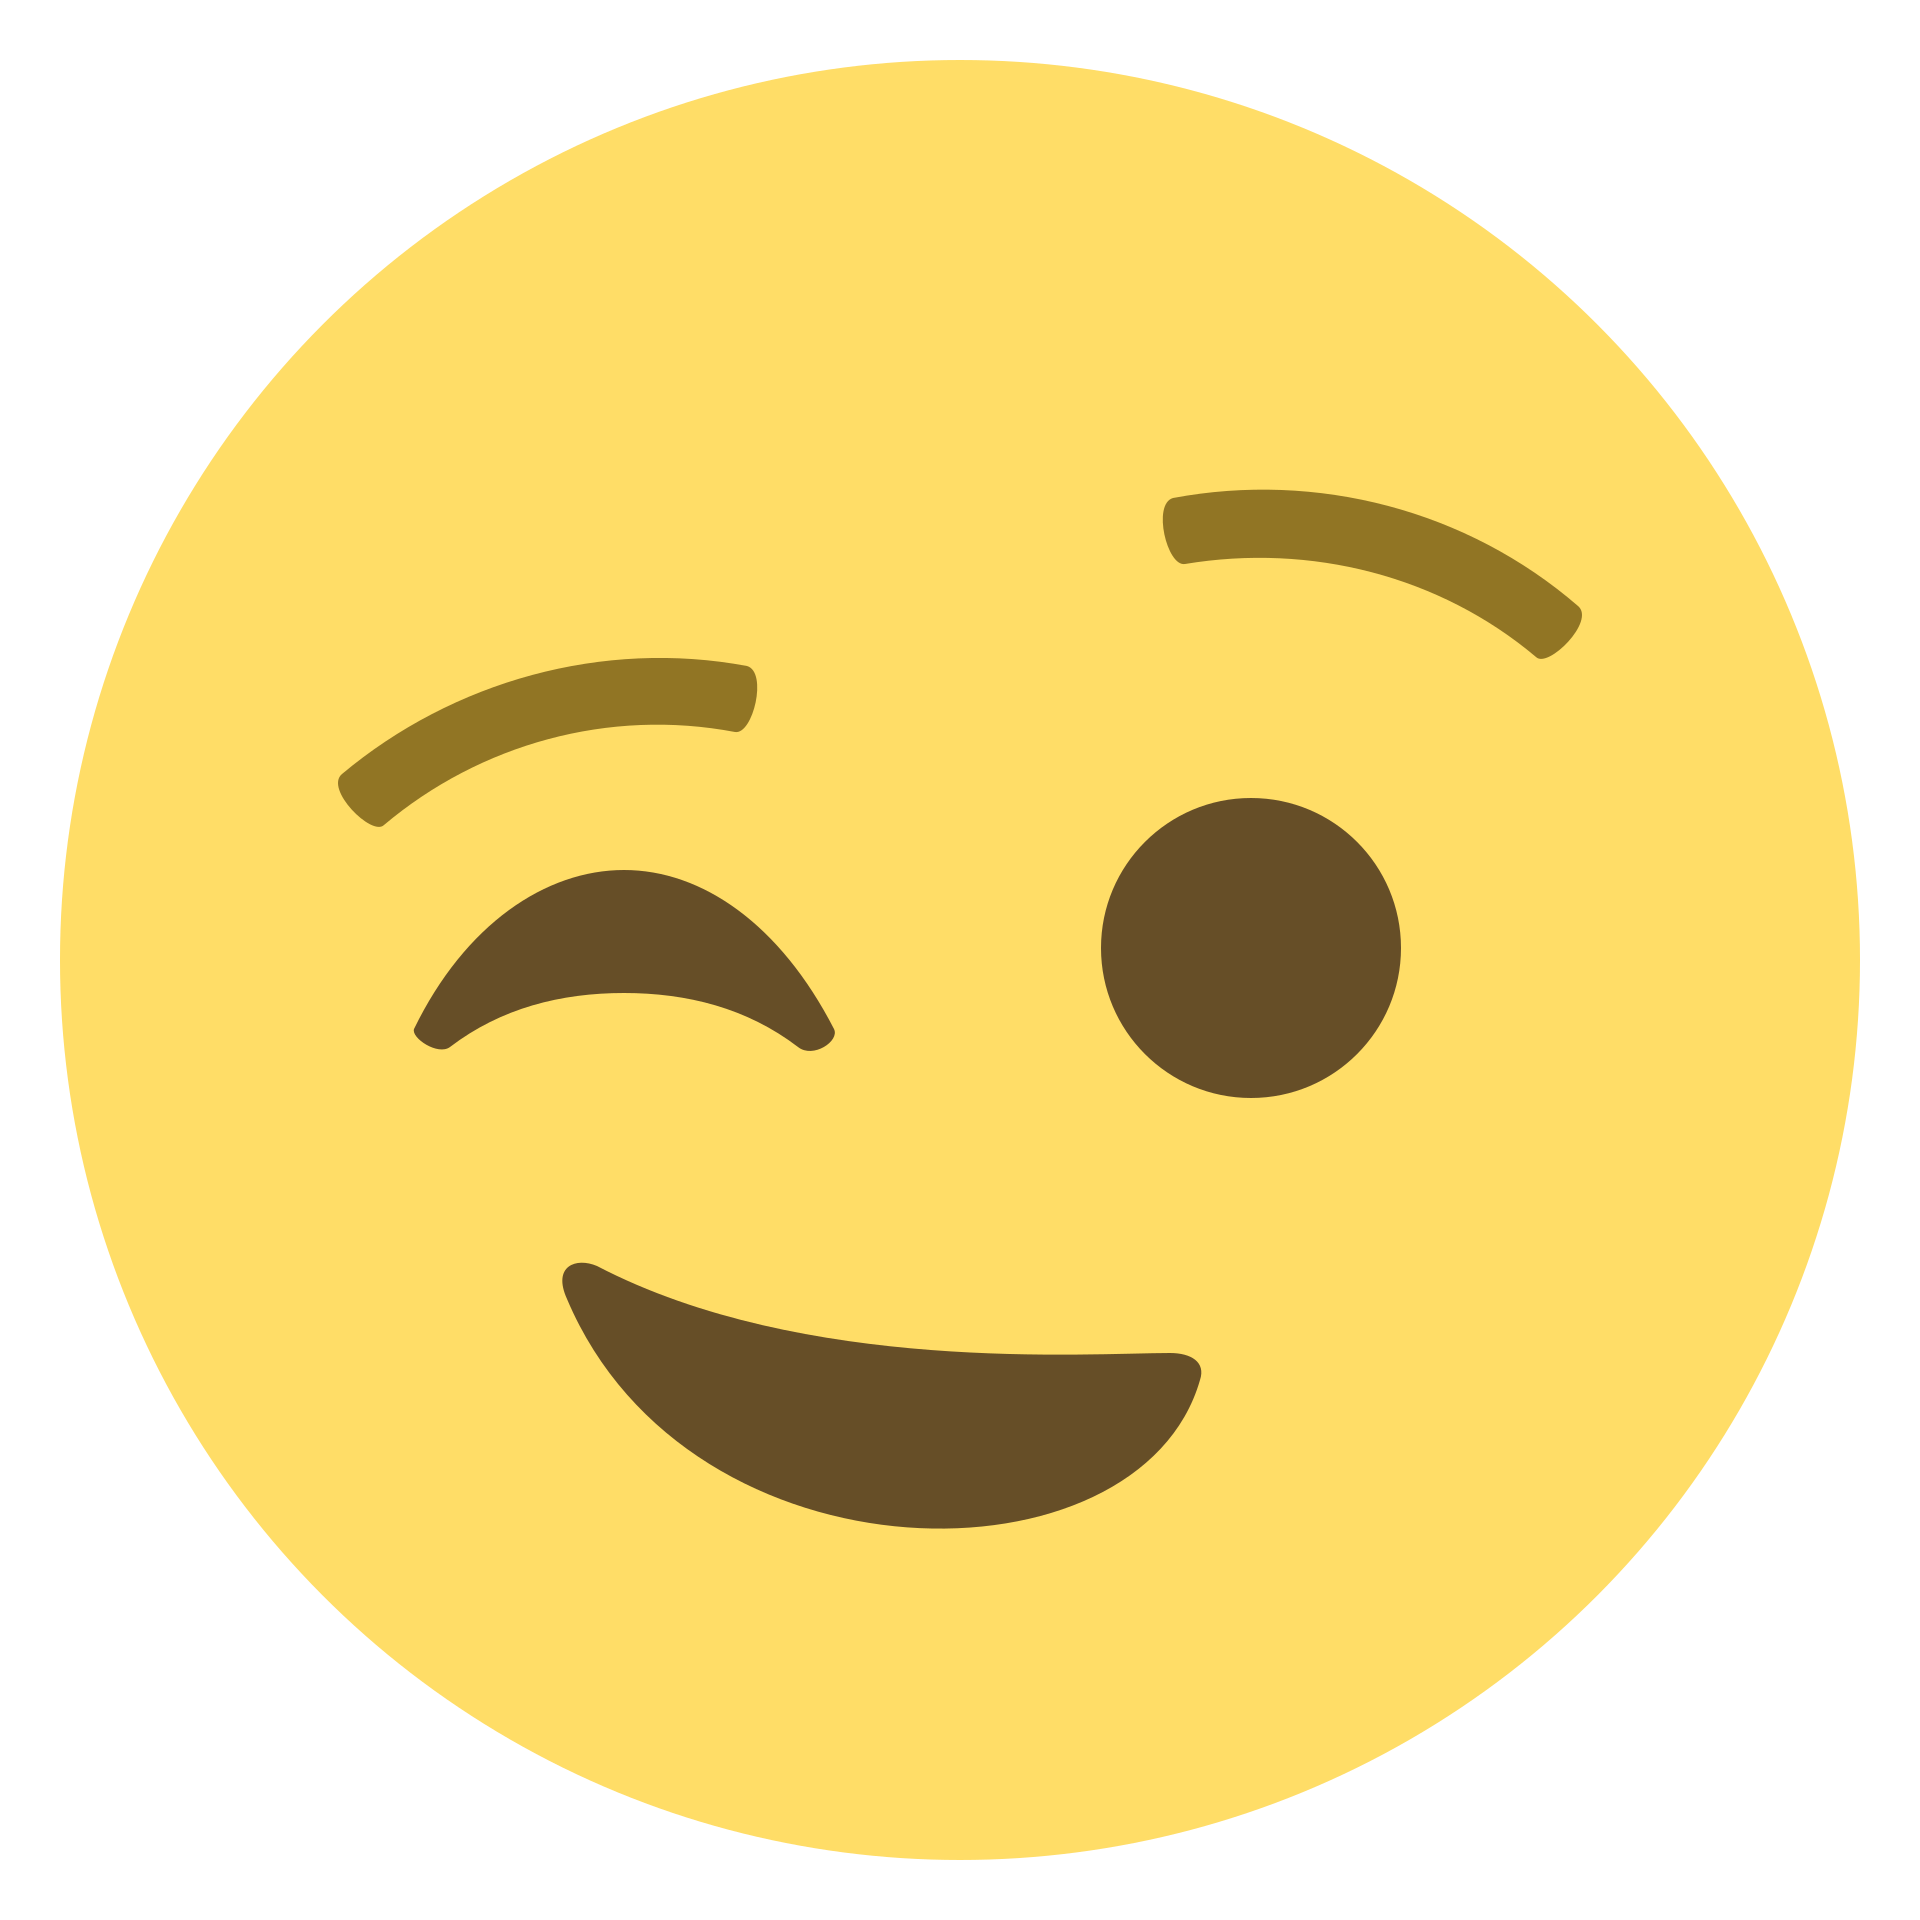 Emojitwo emoji images download